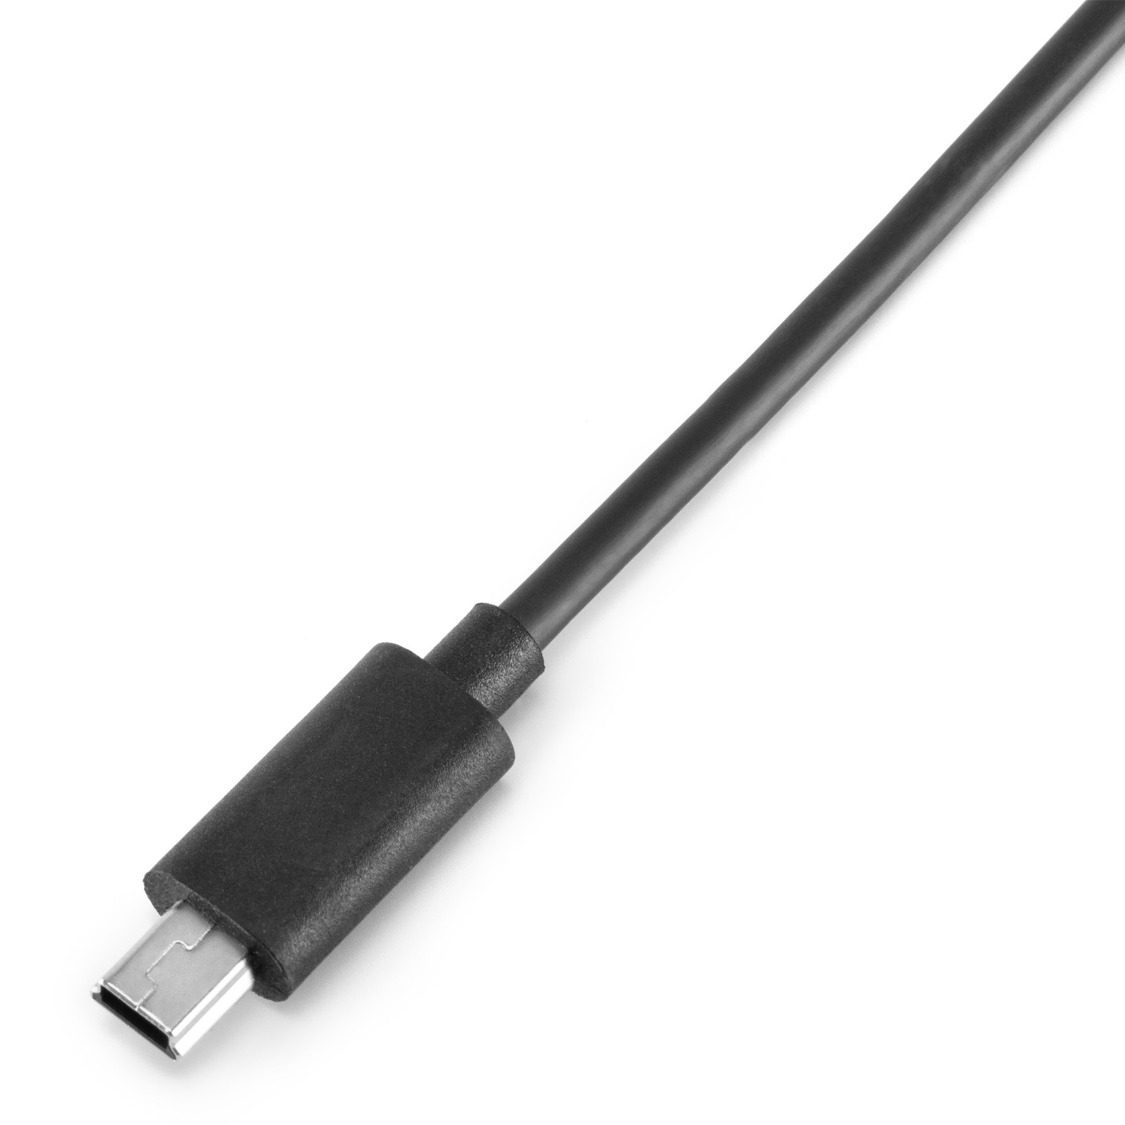 DJI R Multi-Camera Control Cable (Mini USB)